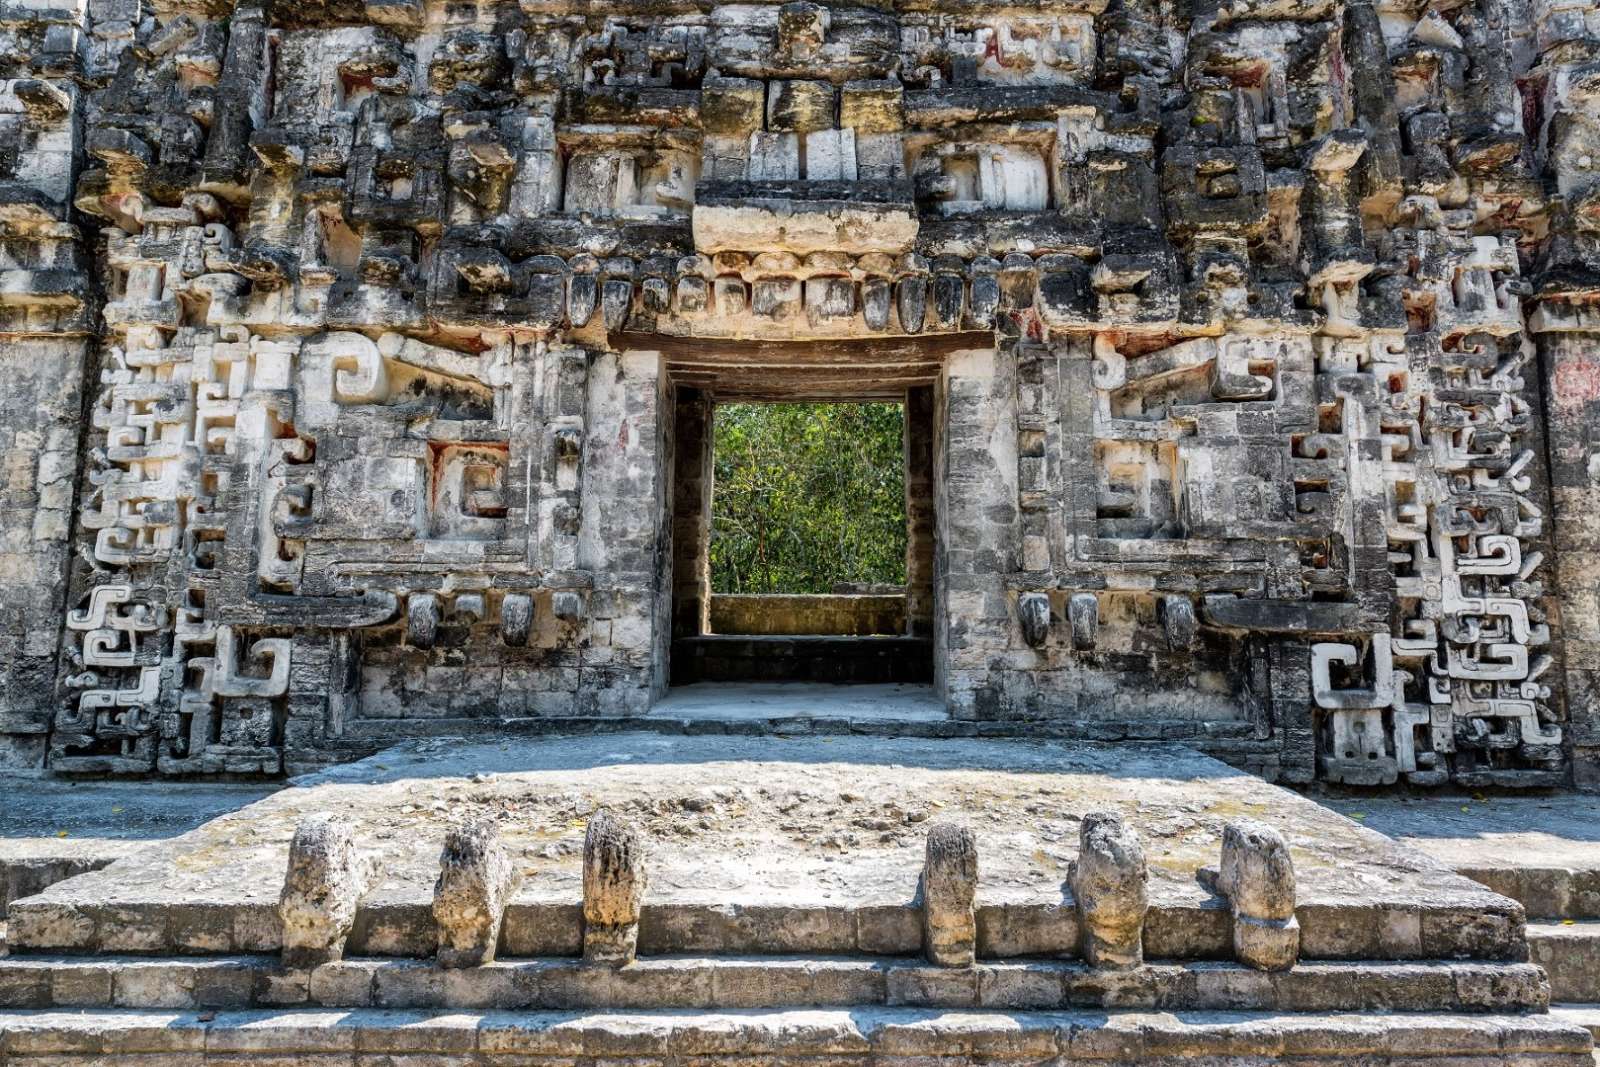 Mayan ruins at Chicanna near Calakmul in Mexico